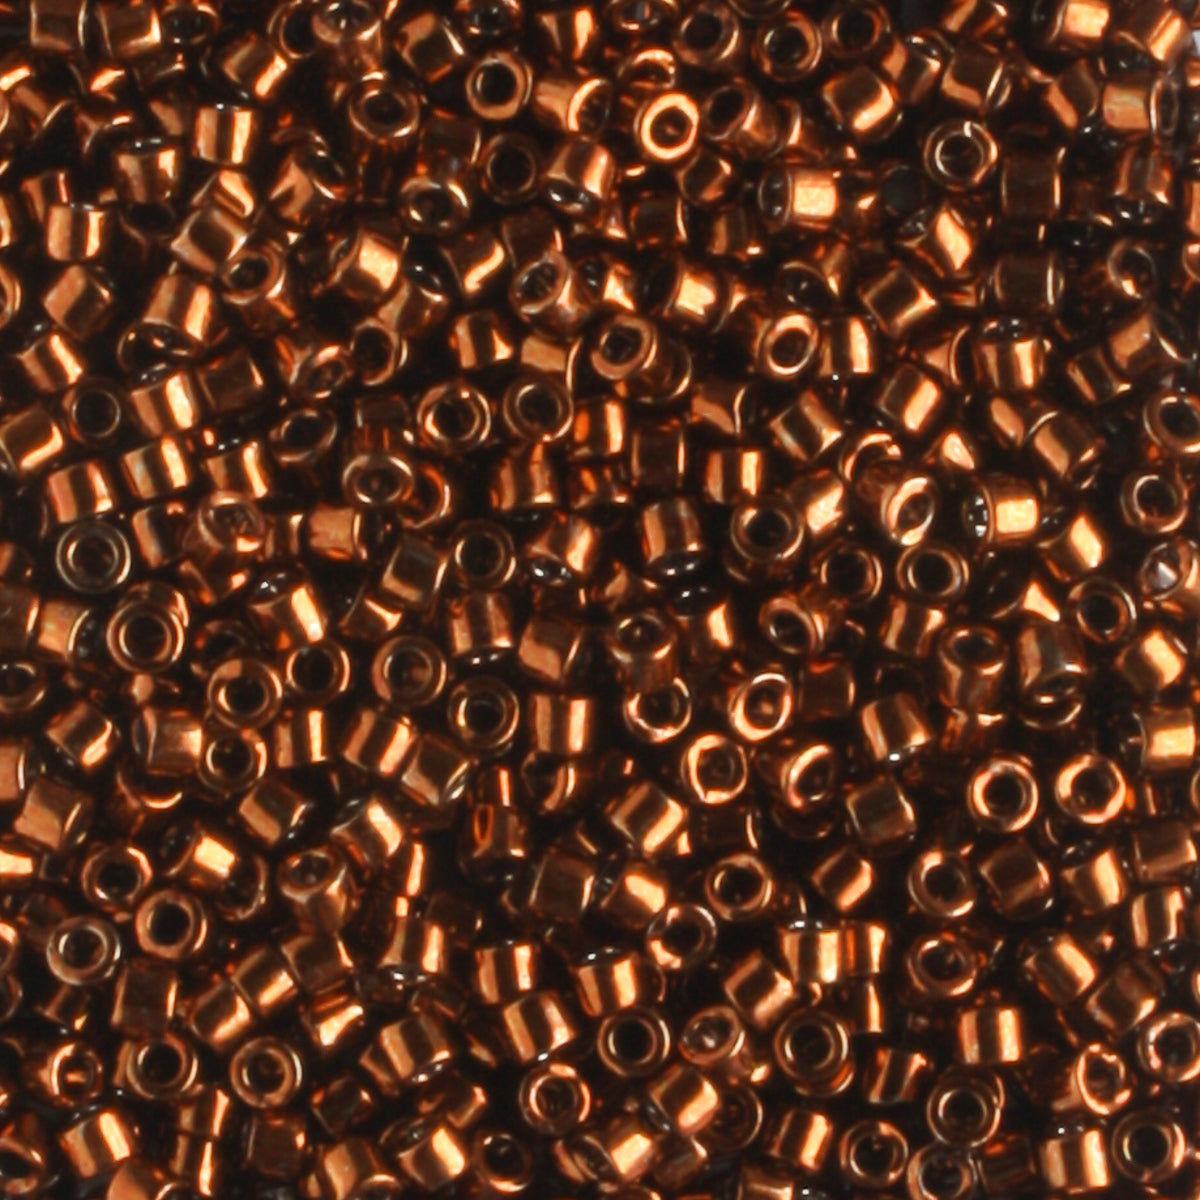 DB0461 Galvanized Copper - 5 grams